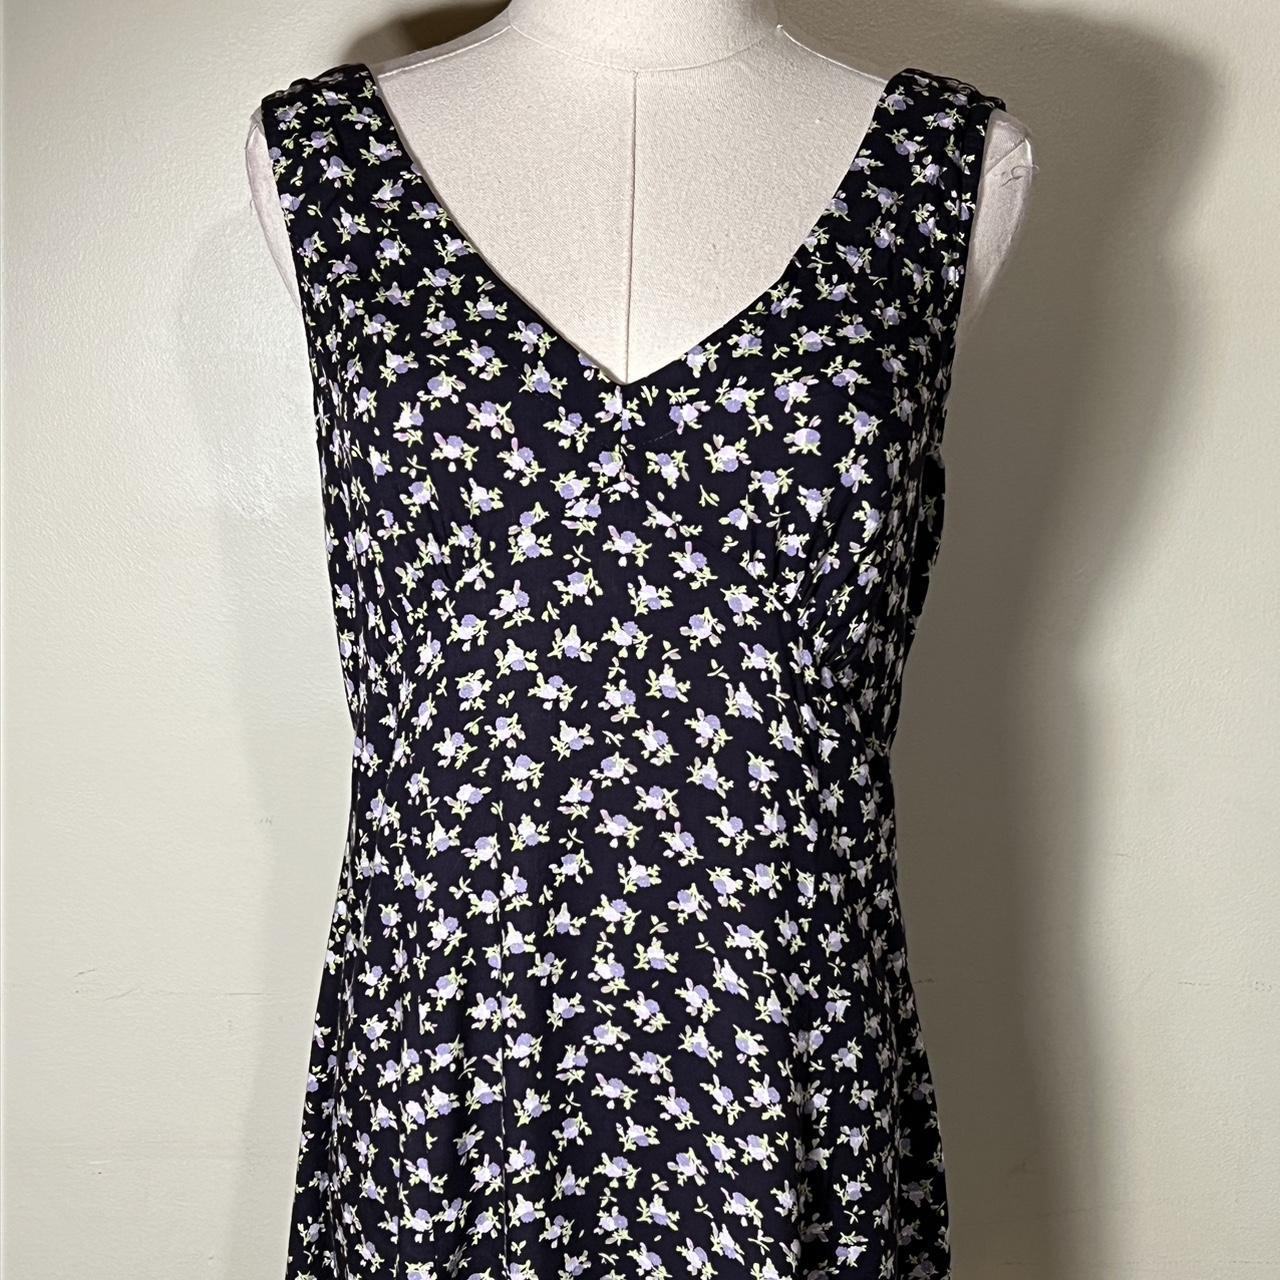 MODA International floral sun dress. Side zipper... - Depop